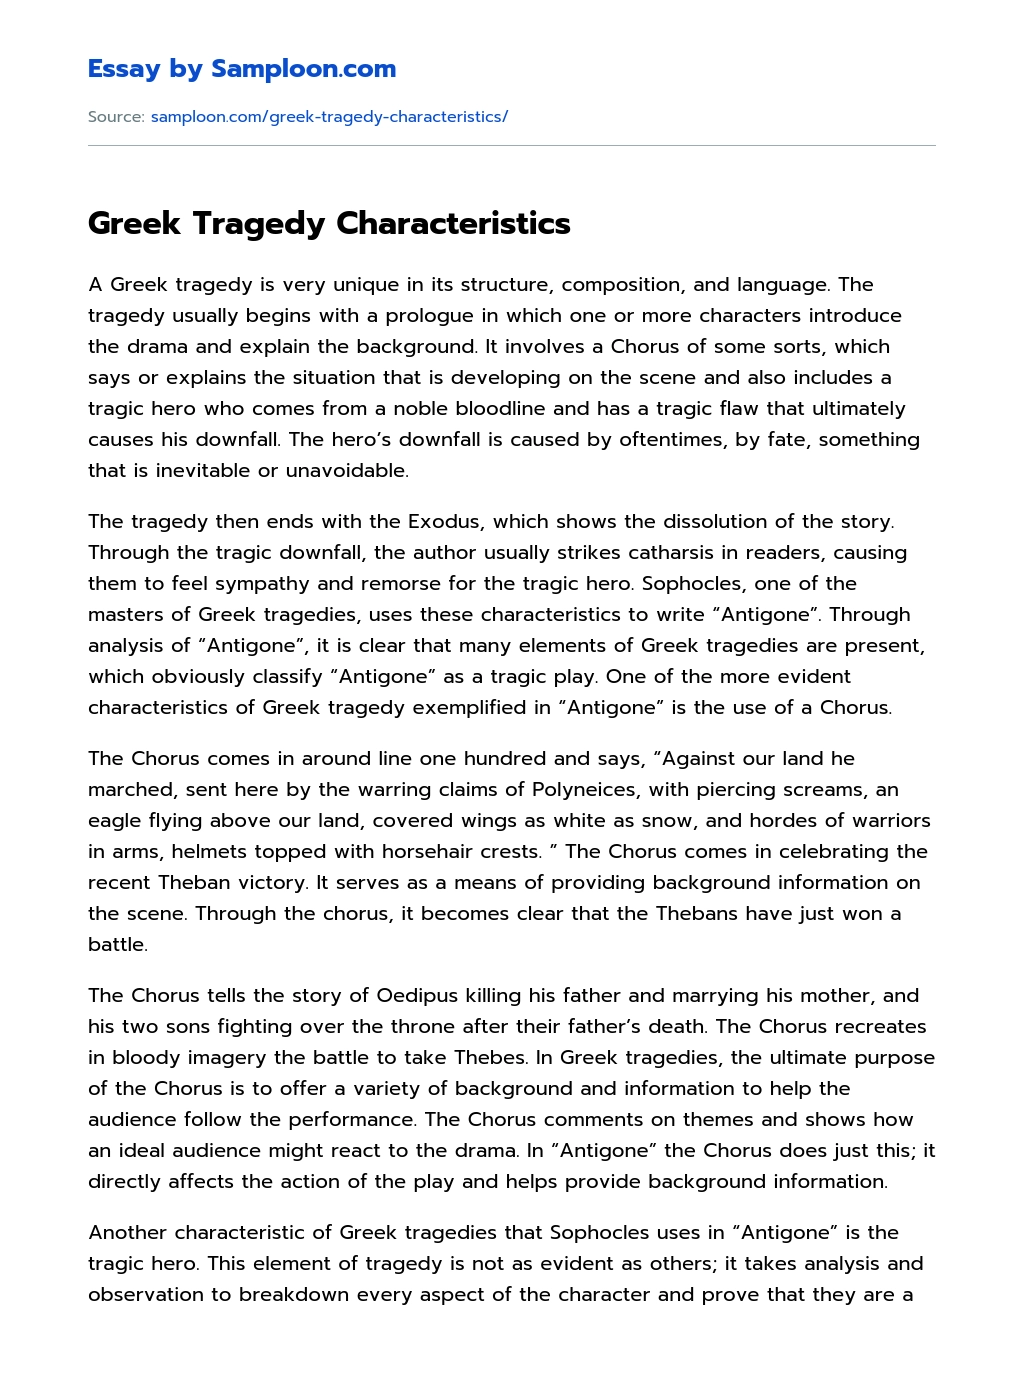 Greek Tragedy Characteristics essay